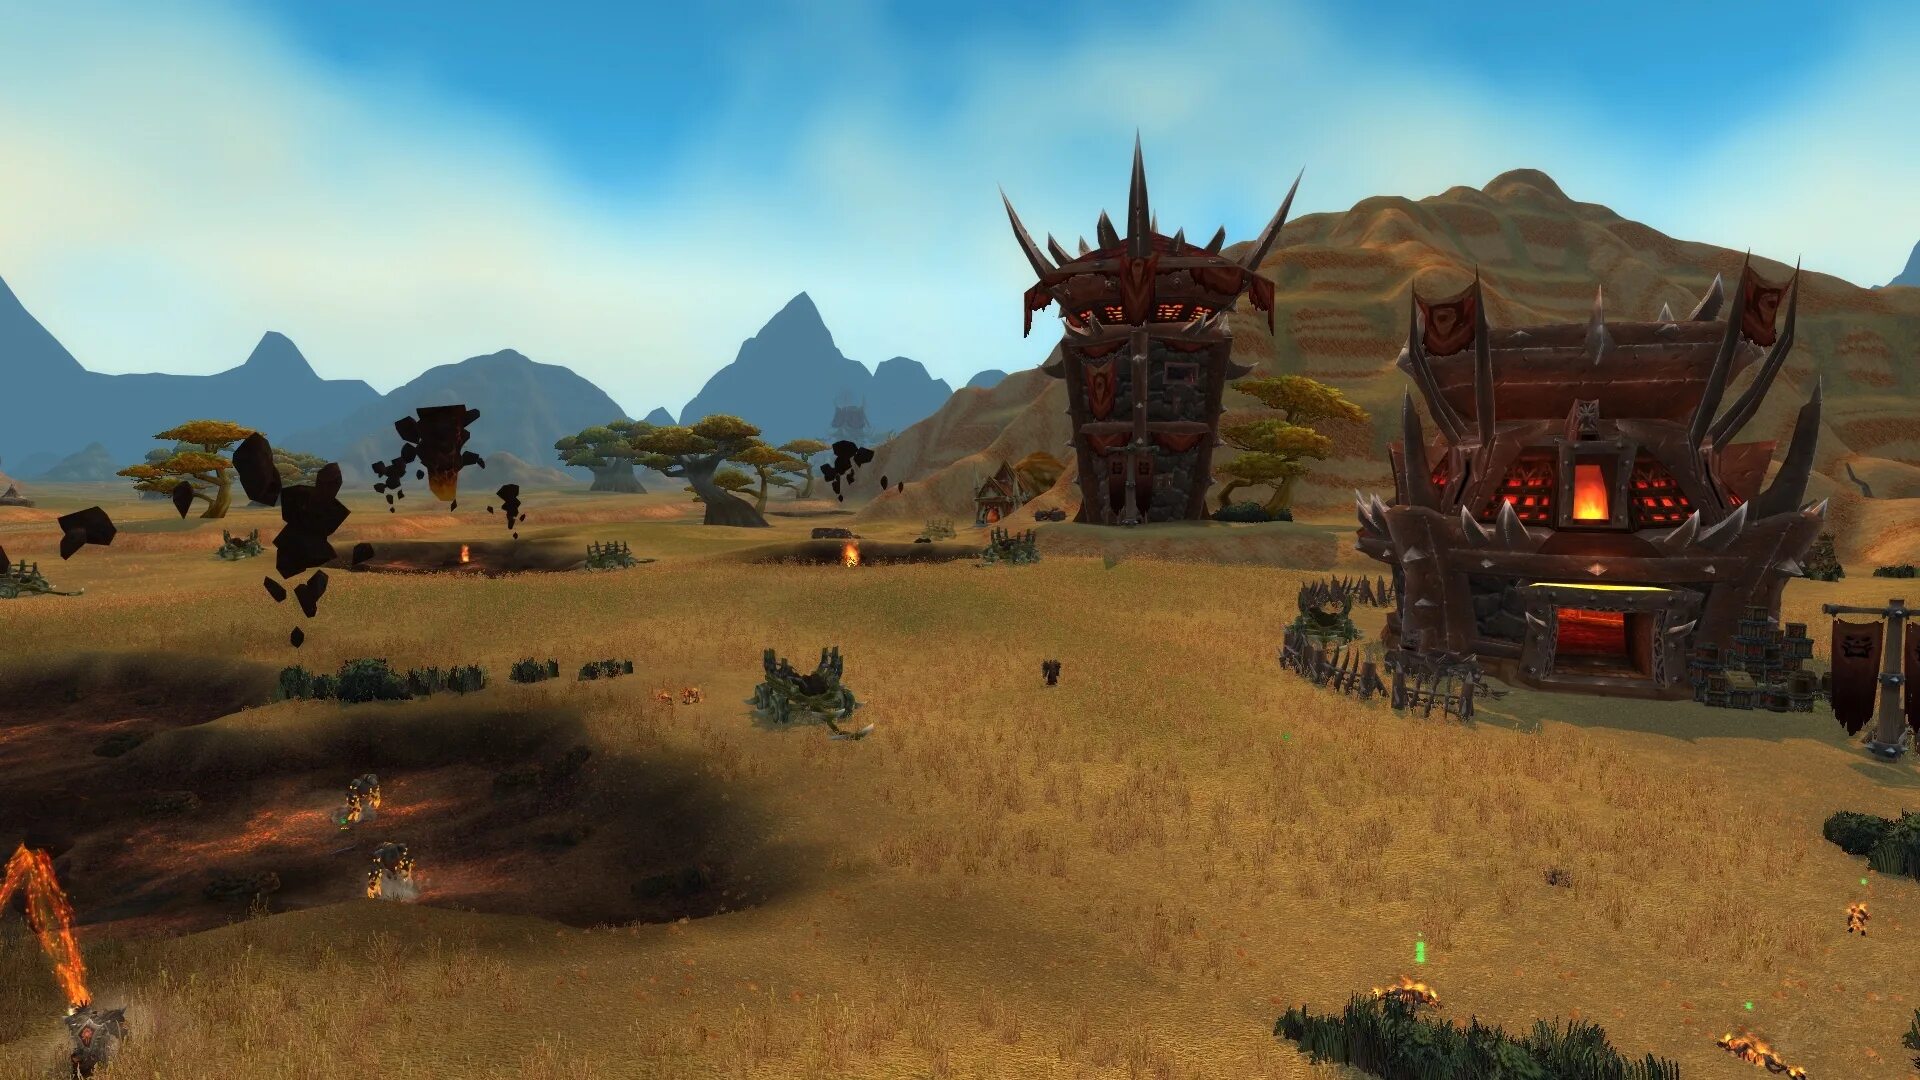 World of Warcraft Battlefield barrens. Barren Battlefield. Бонус к полям сражений степи. Wow Battleground Speed up.